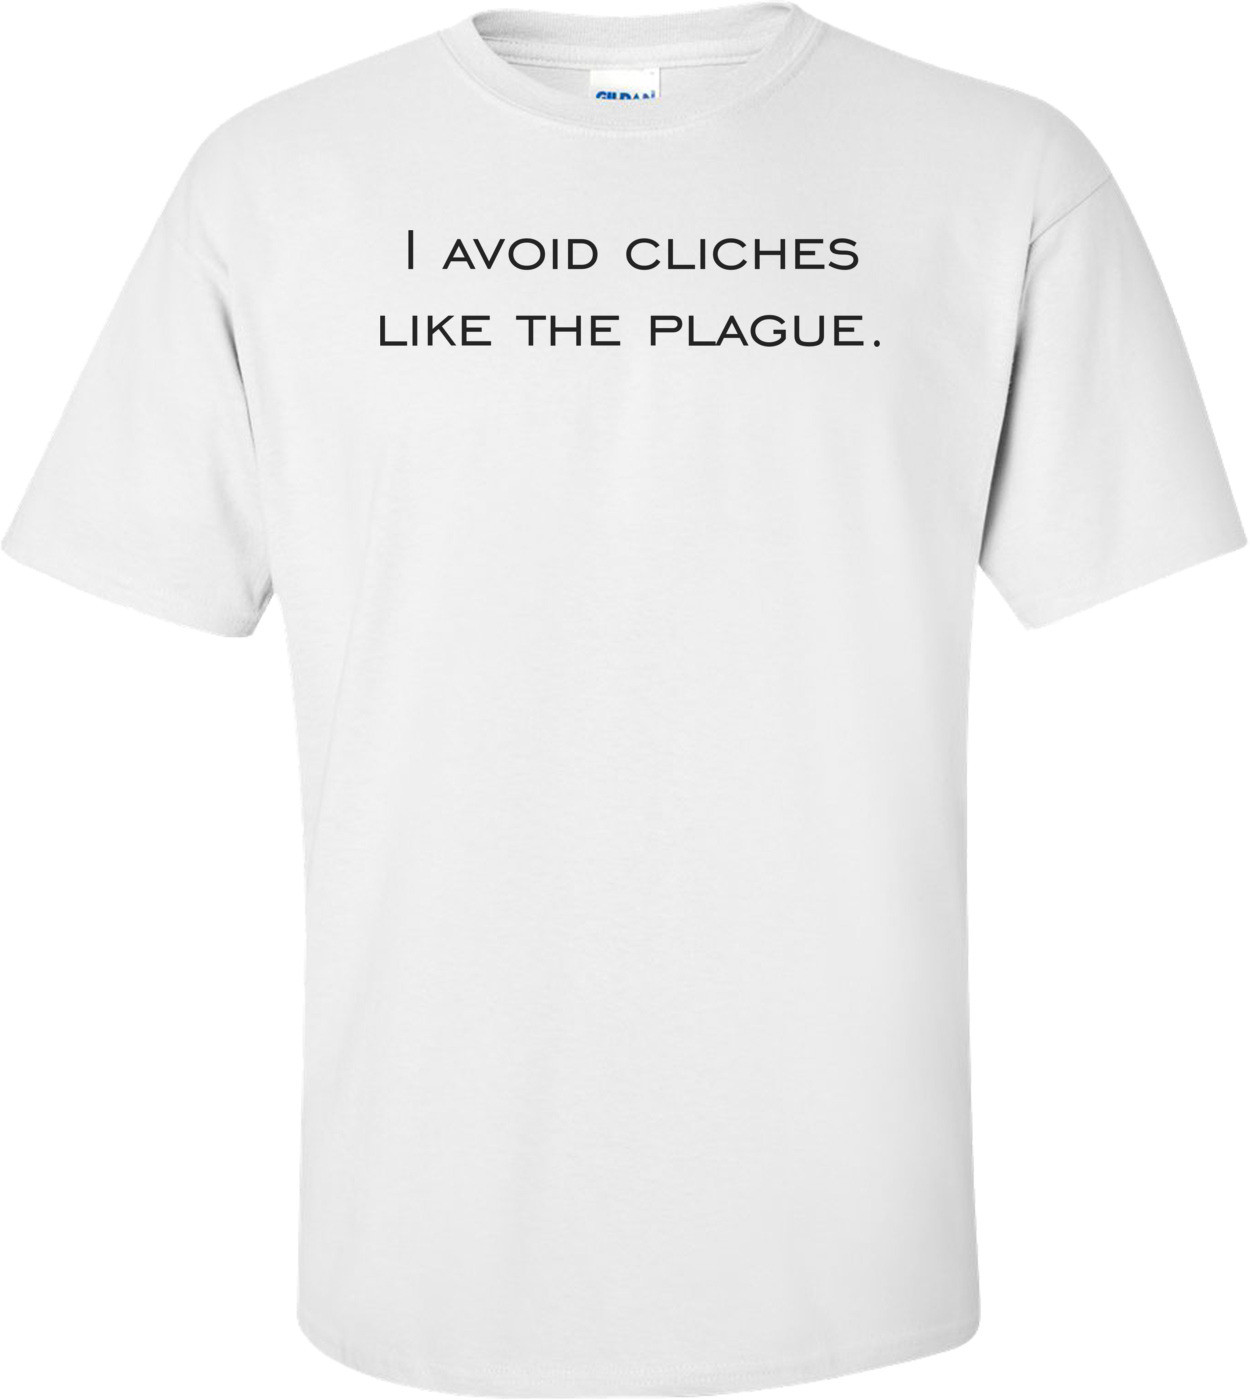 I avoid cliches like the plague. Shirt